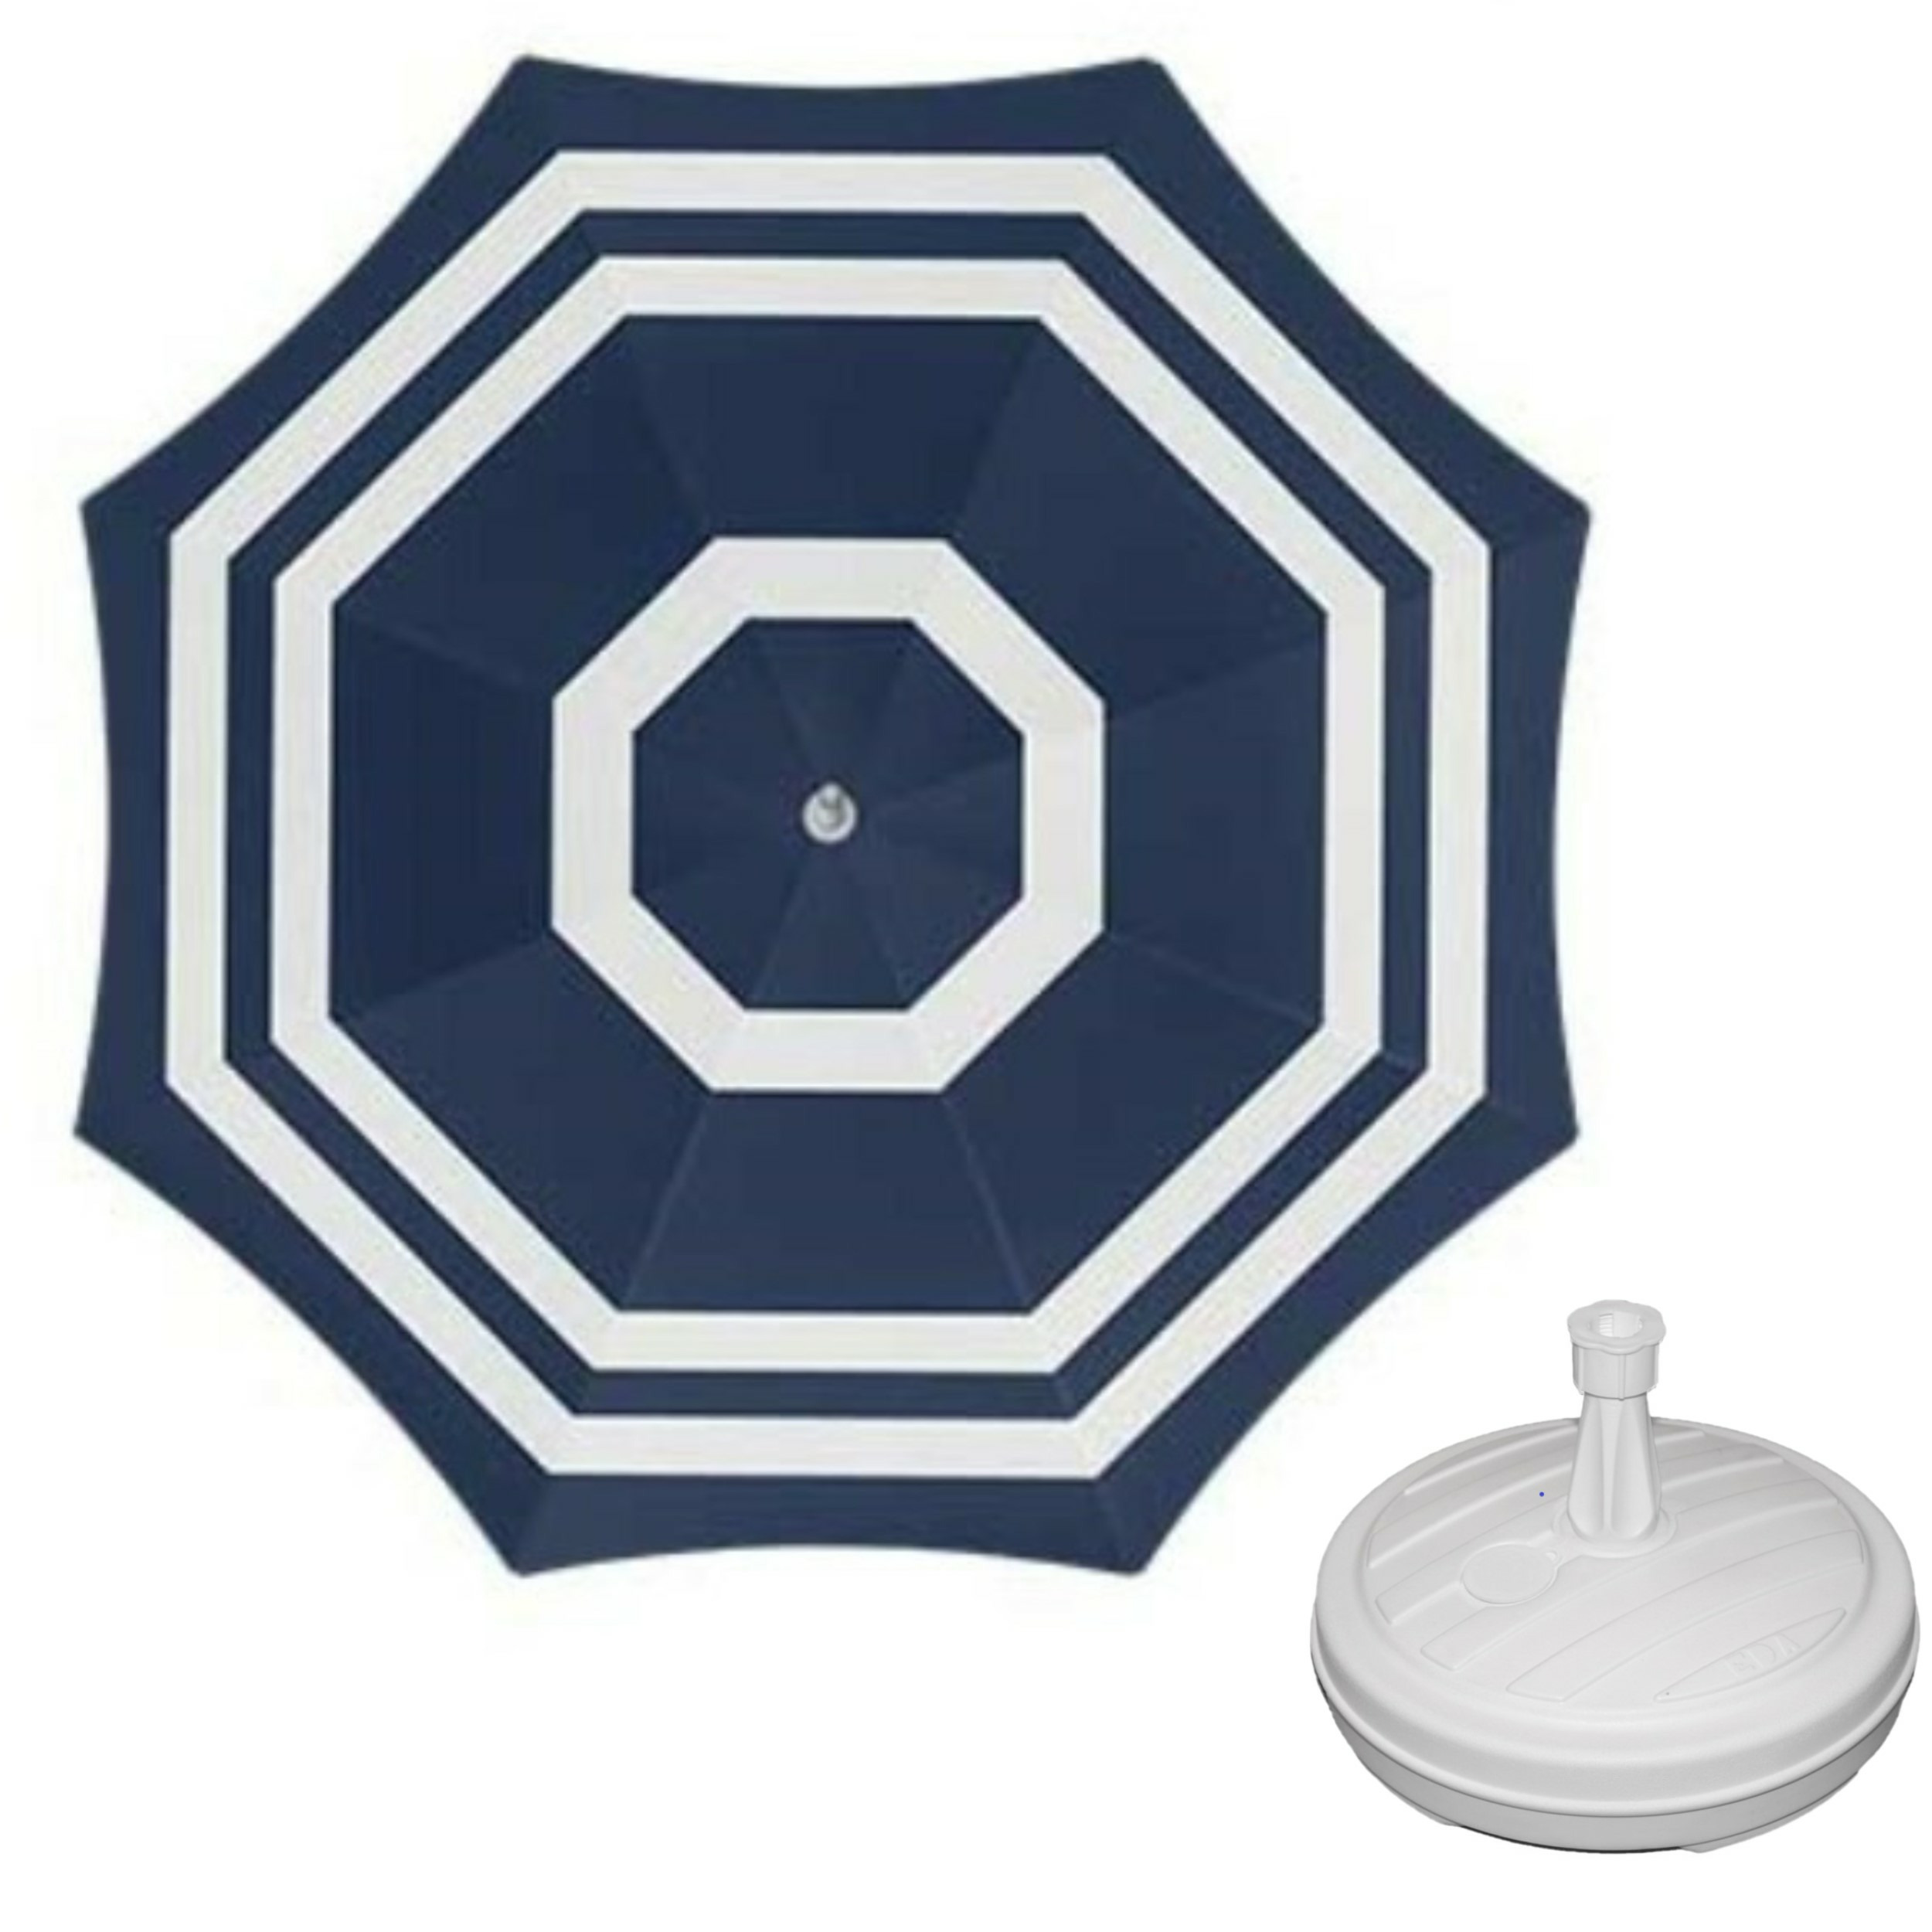 Parasol blauw-wit D160 cm incl. draagtas parasolvoet 42 cm